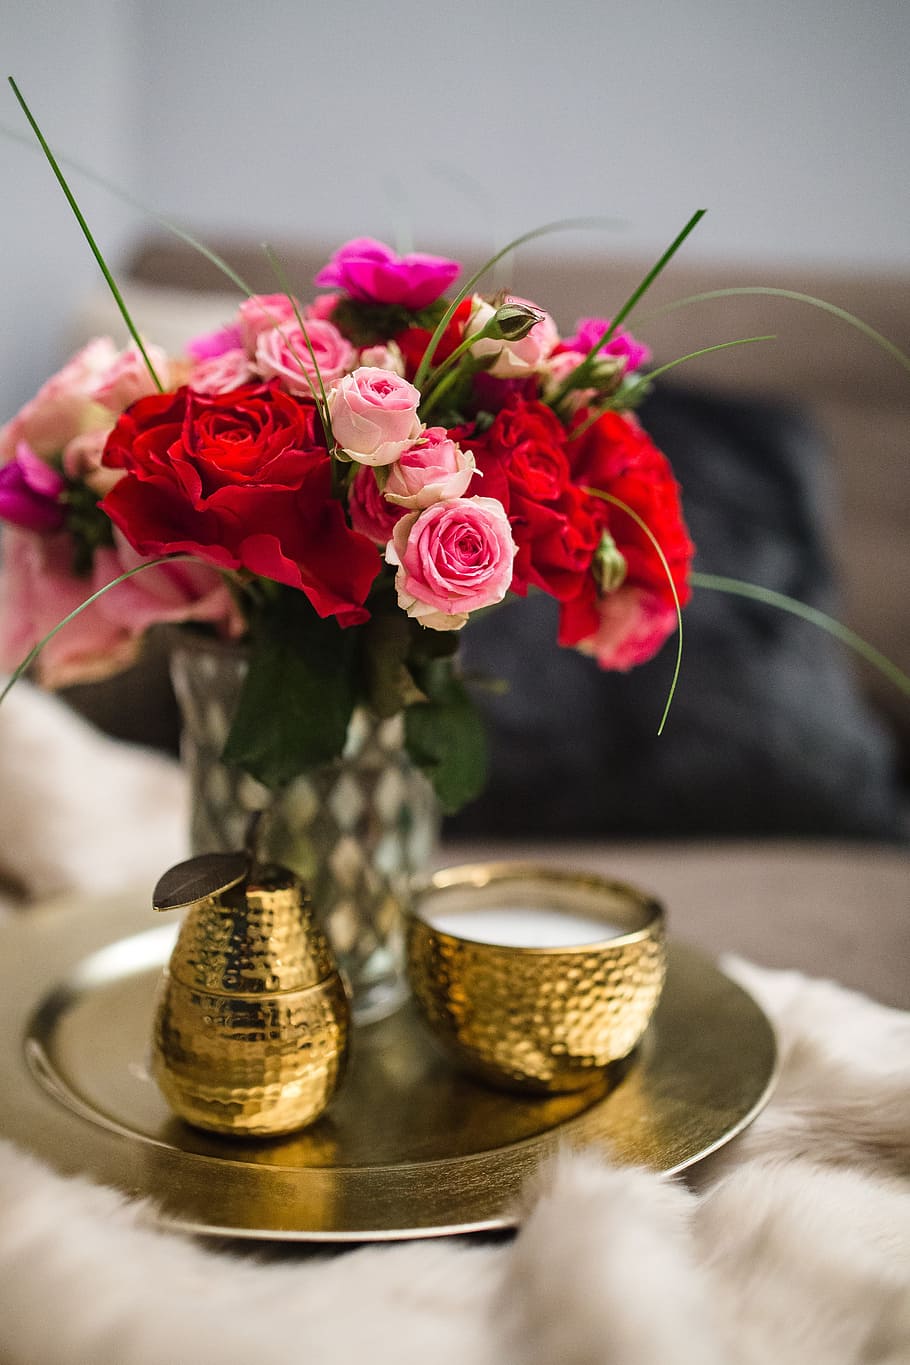 букет, цветы, свечи, розы, милая, золотая, романтическая, украшения, розовая, свеча